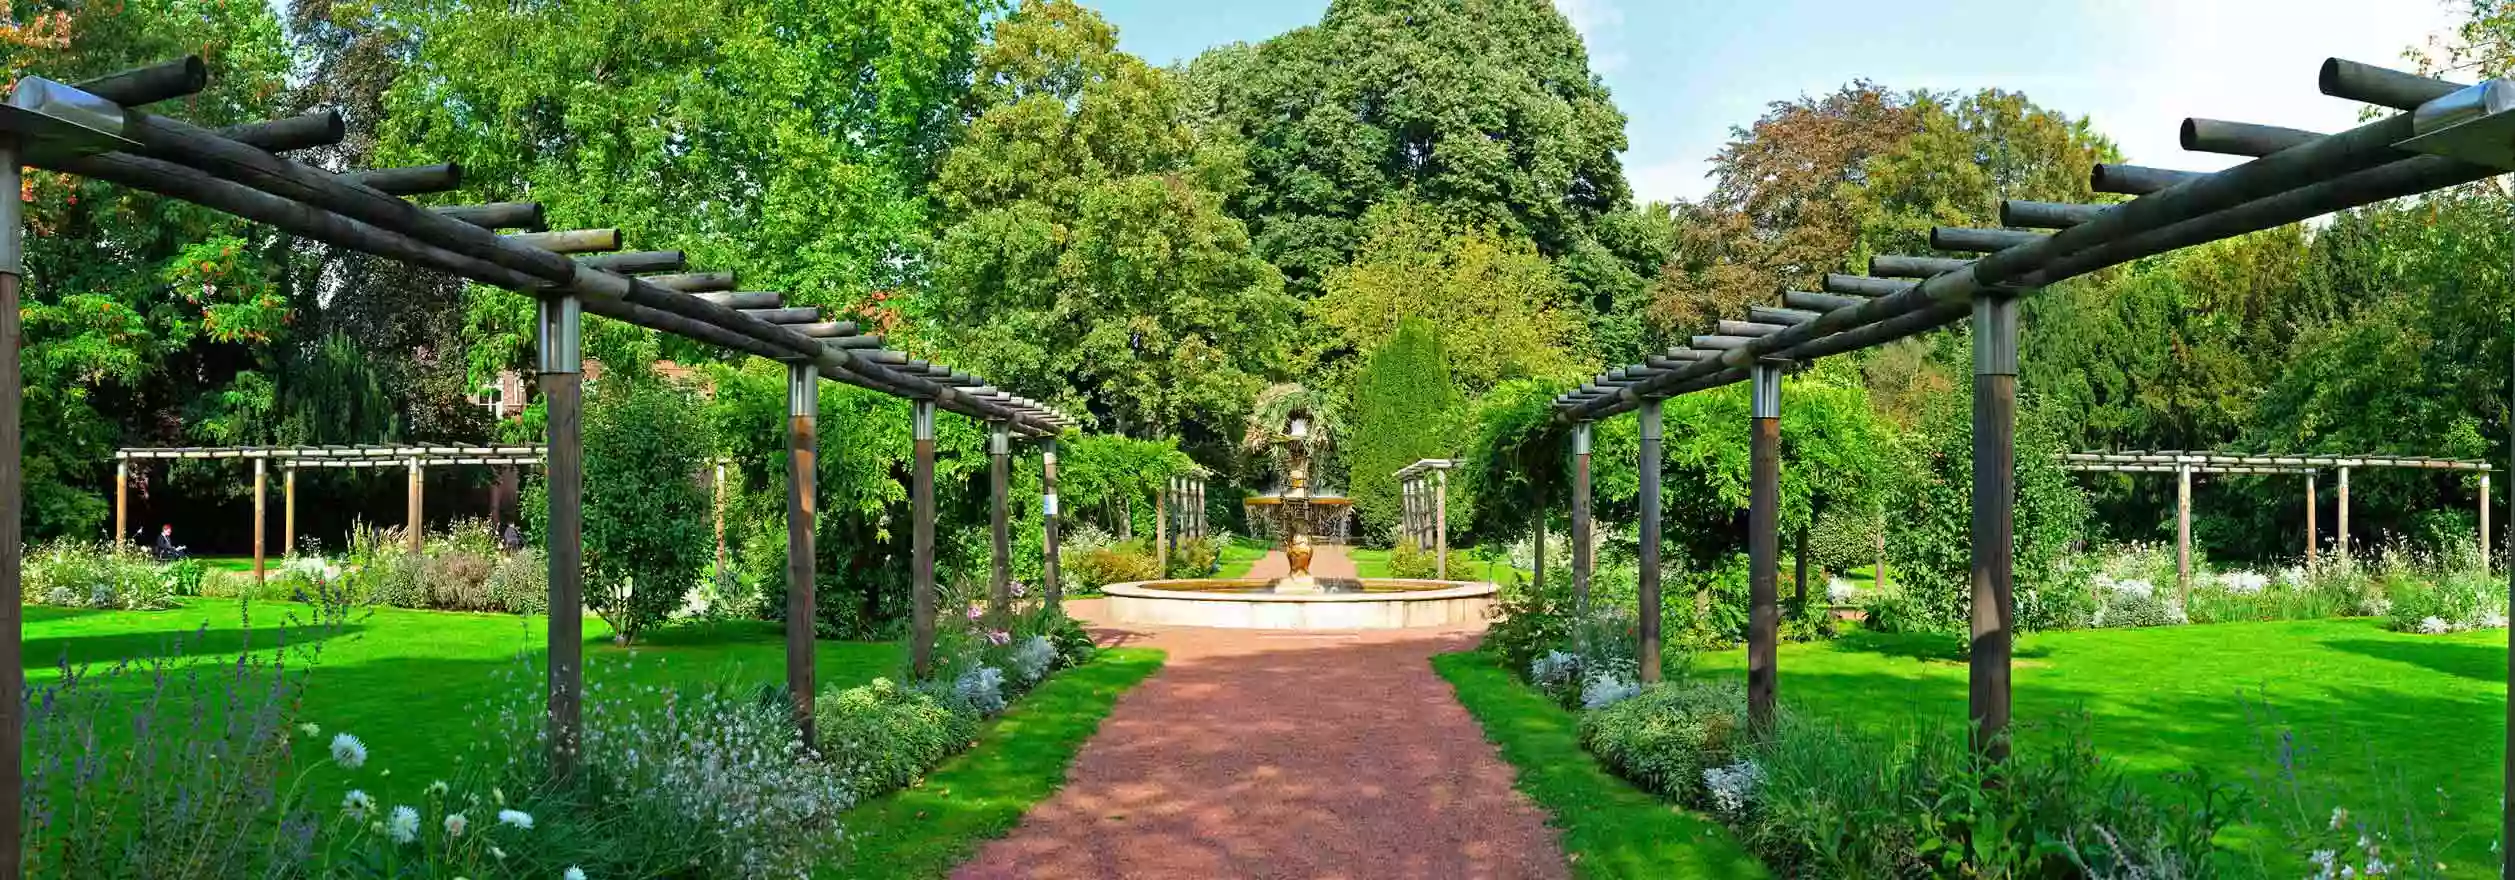 Jardin Botanique de Tourcoing